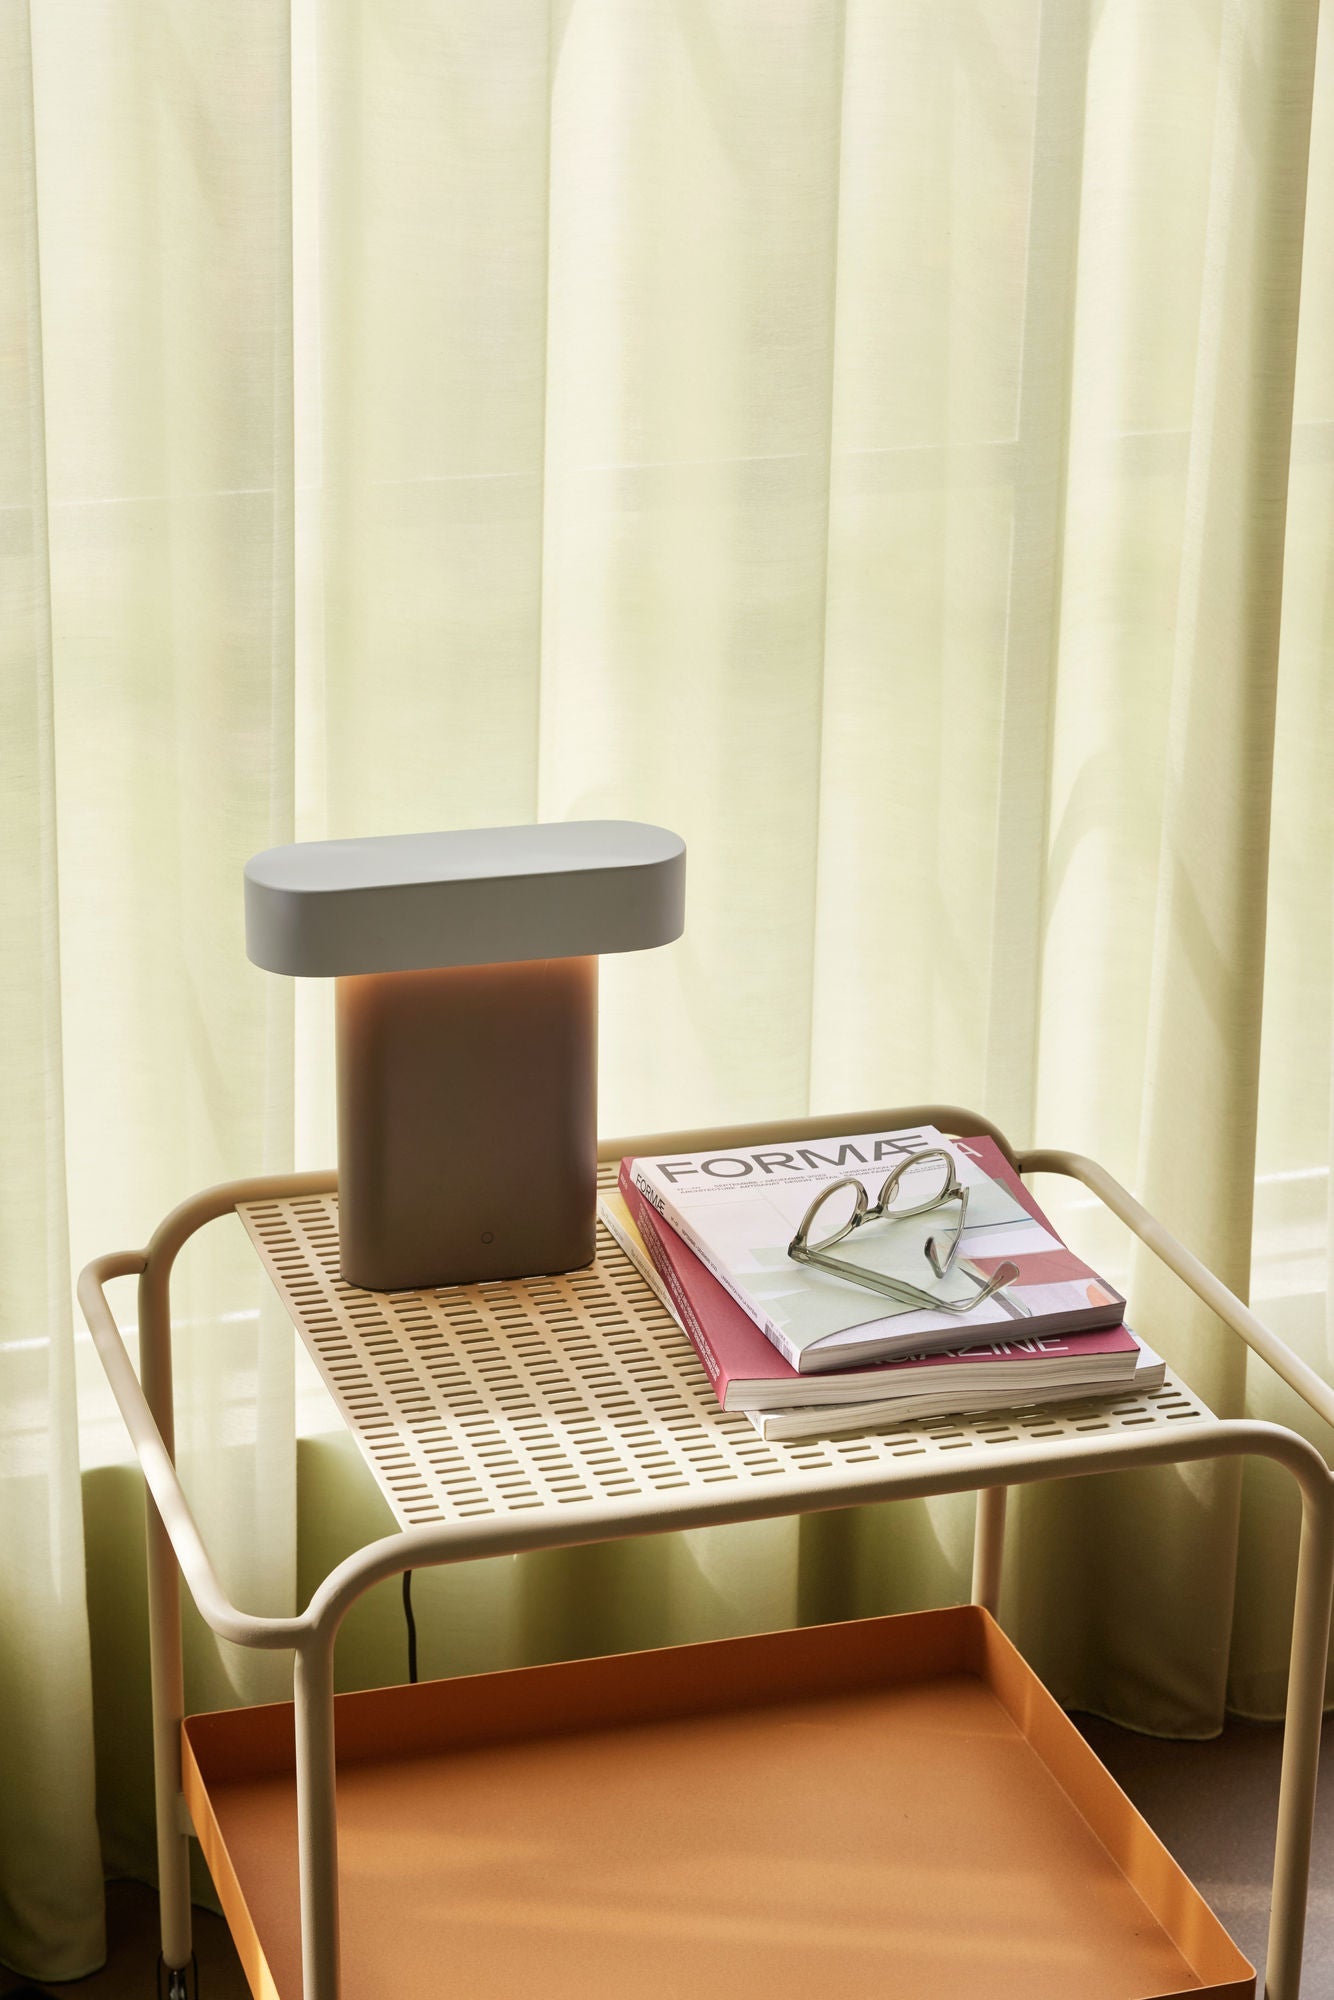 Hübsch Sleek Table Lamp Brown/Light grey